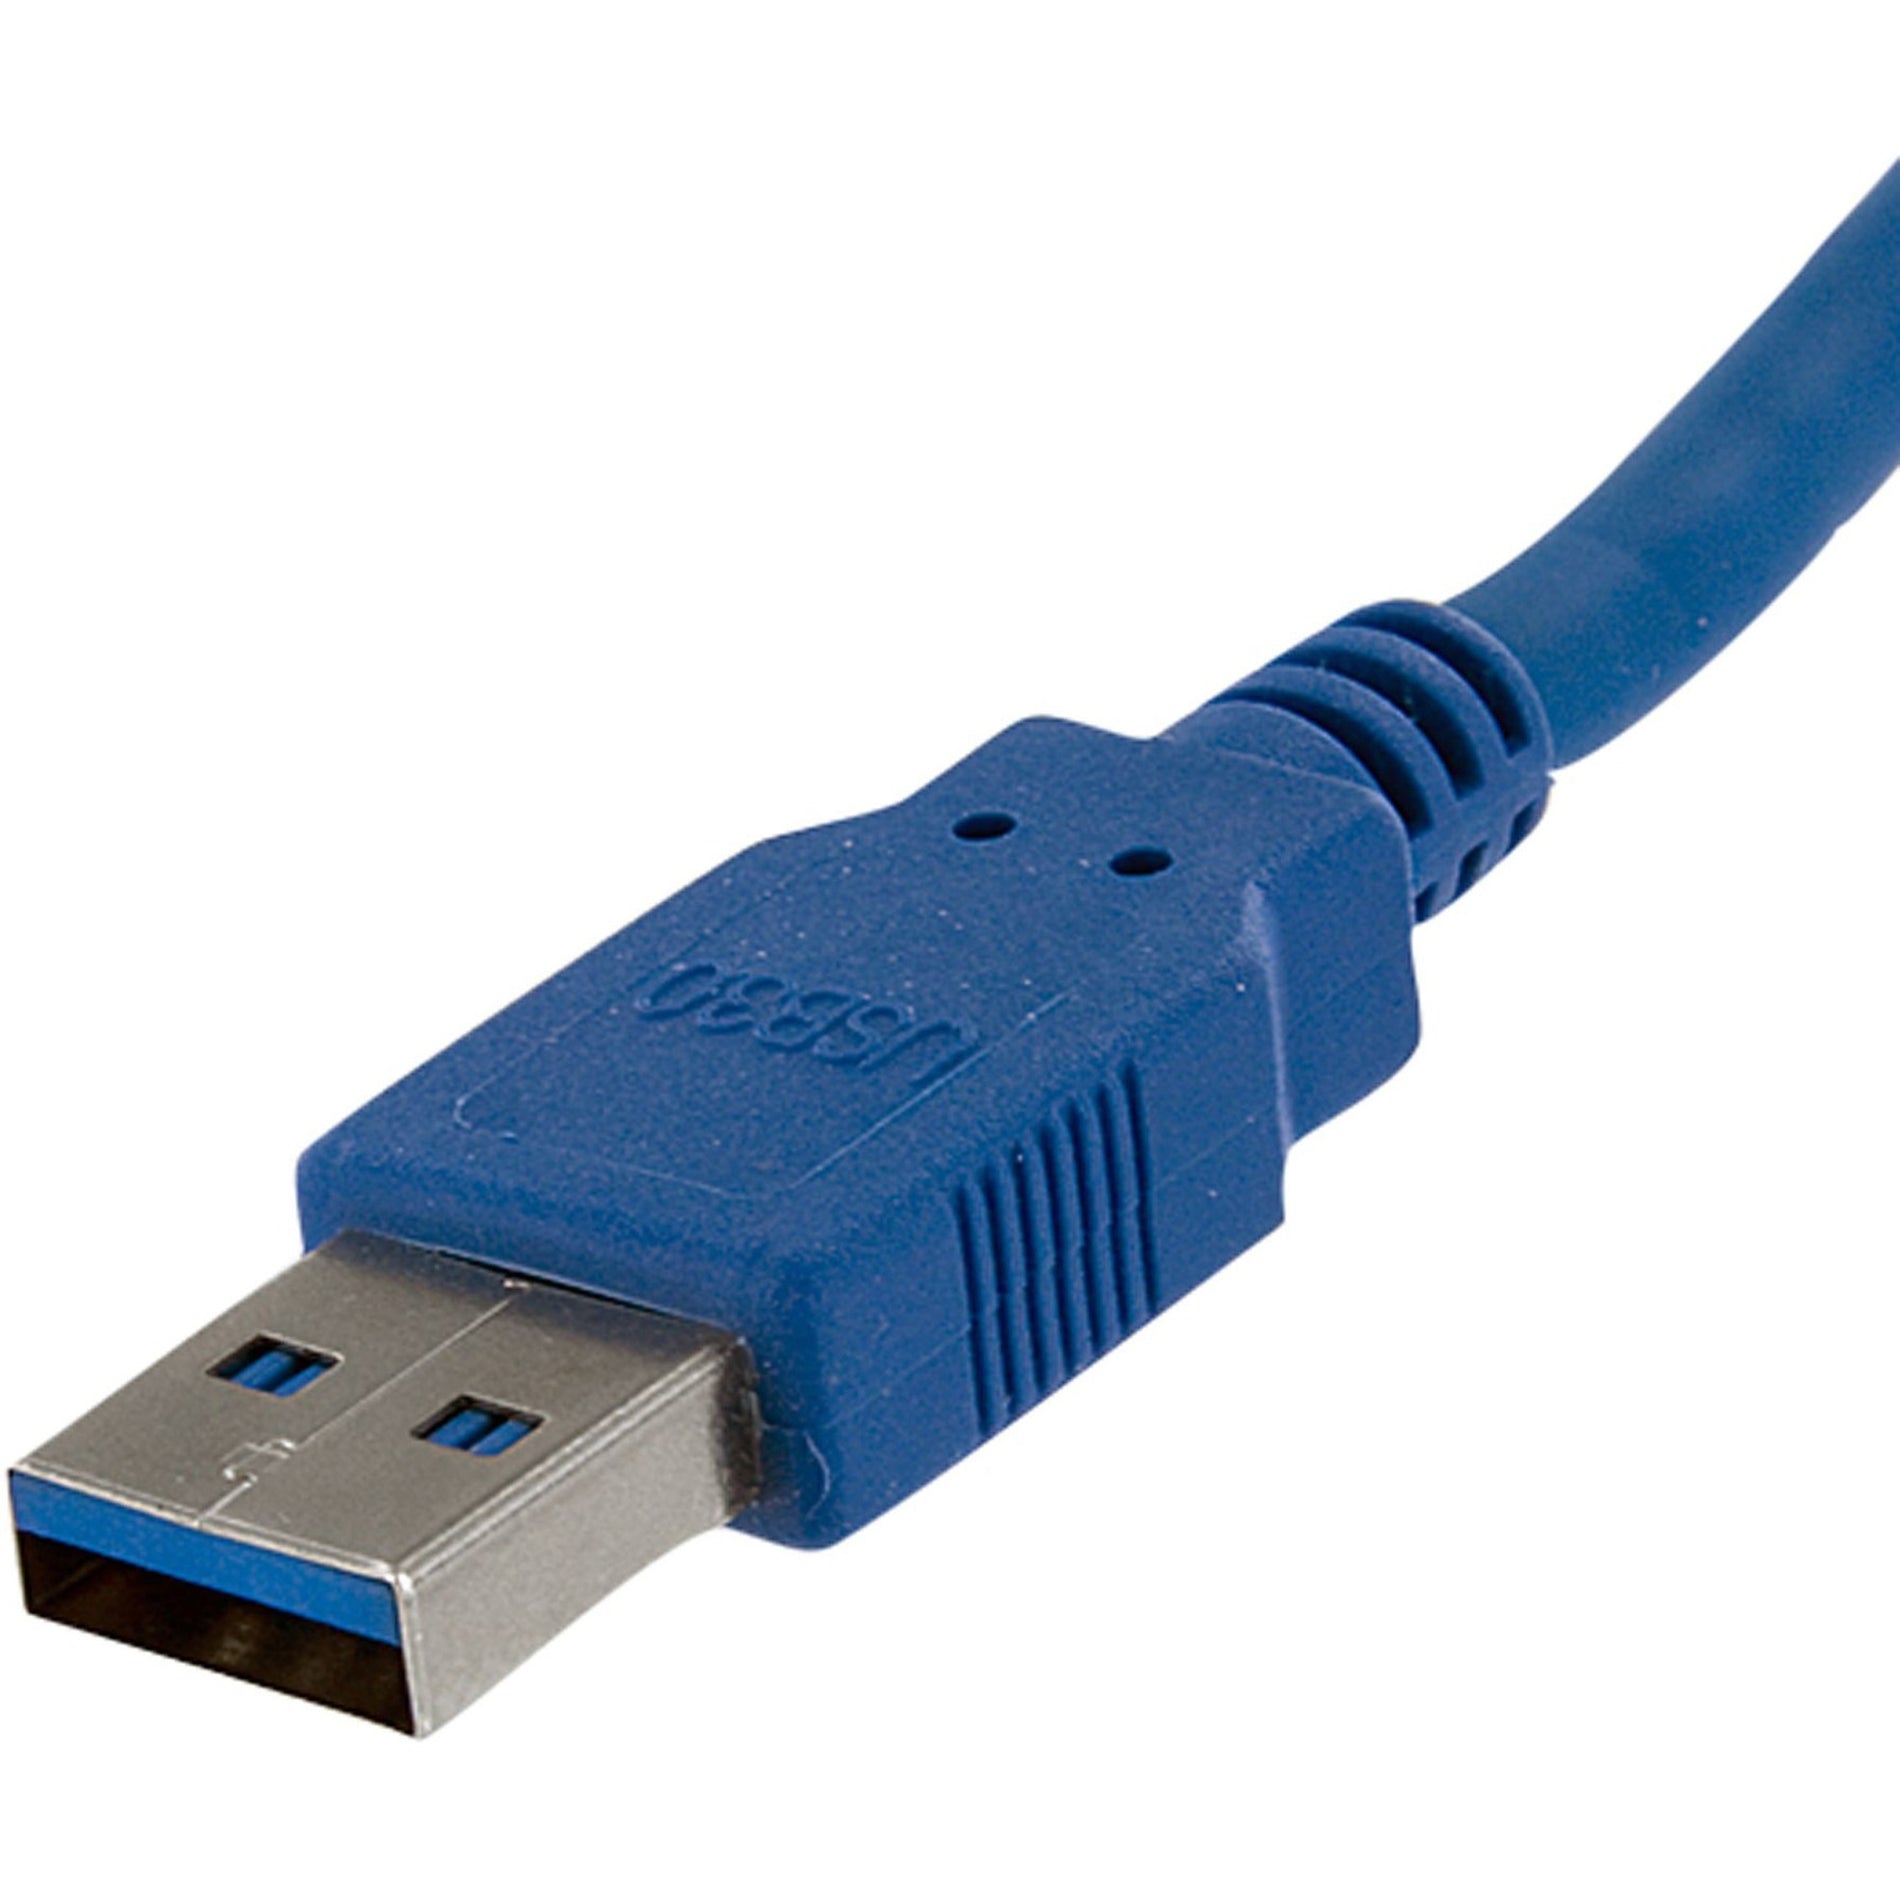 كابل سوبر سبيد USB 3.0 6 أقدام - A إلى A - ذكر إلى ذكر ، نقل بيانات عالي السرعة ، حماية EMI StarTech.com